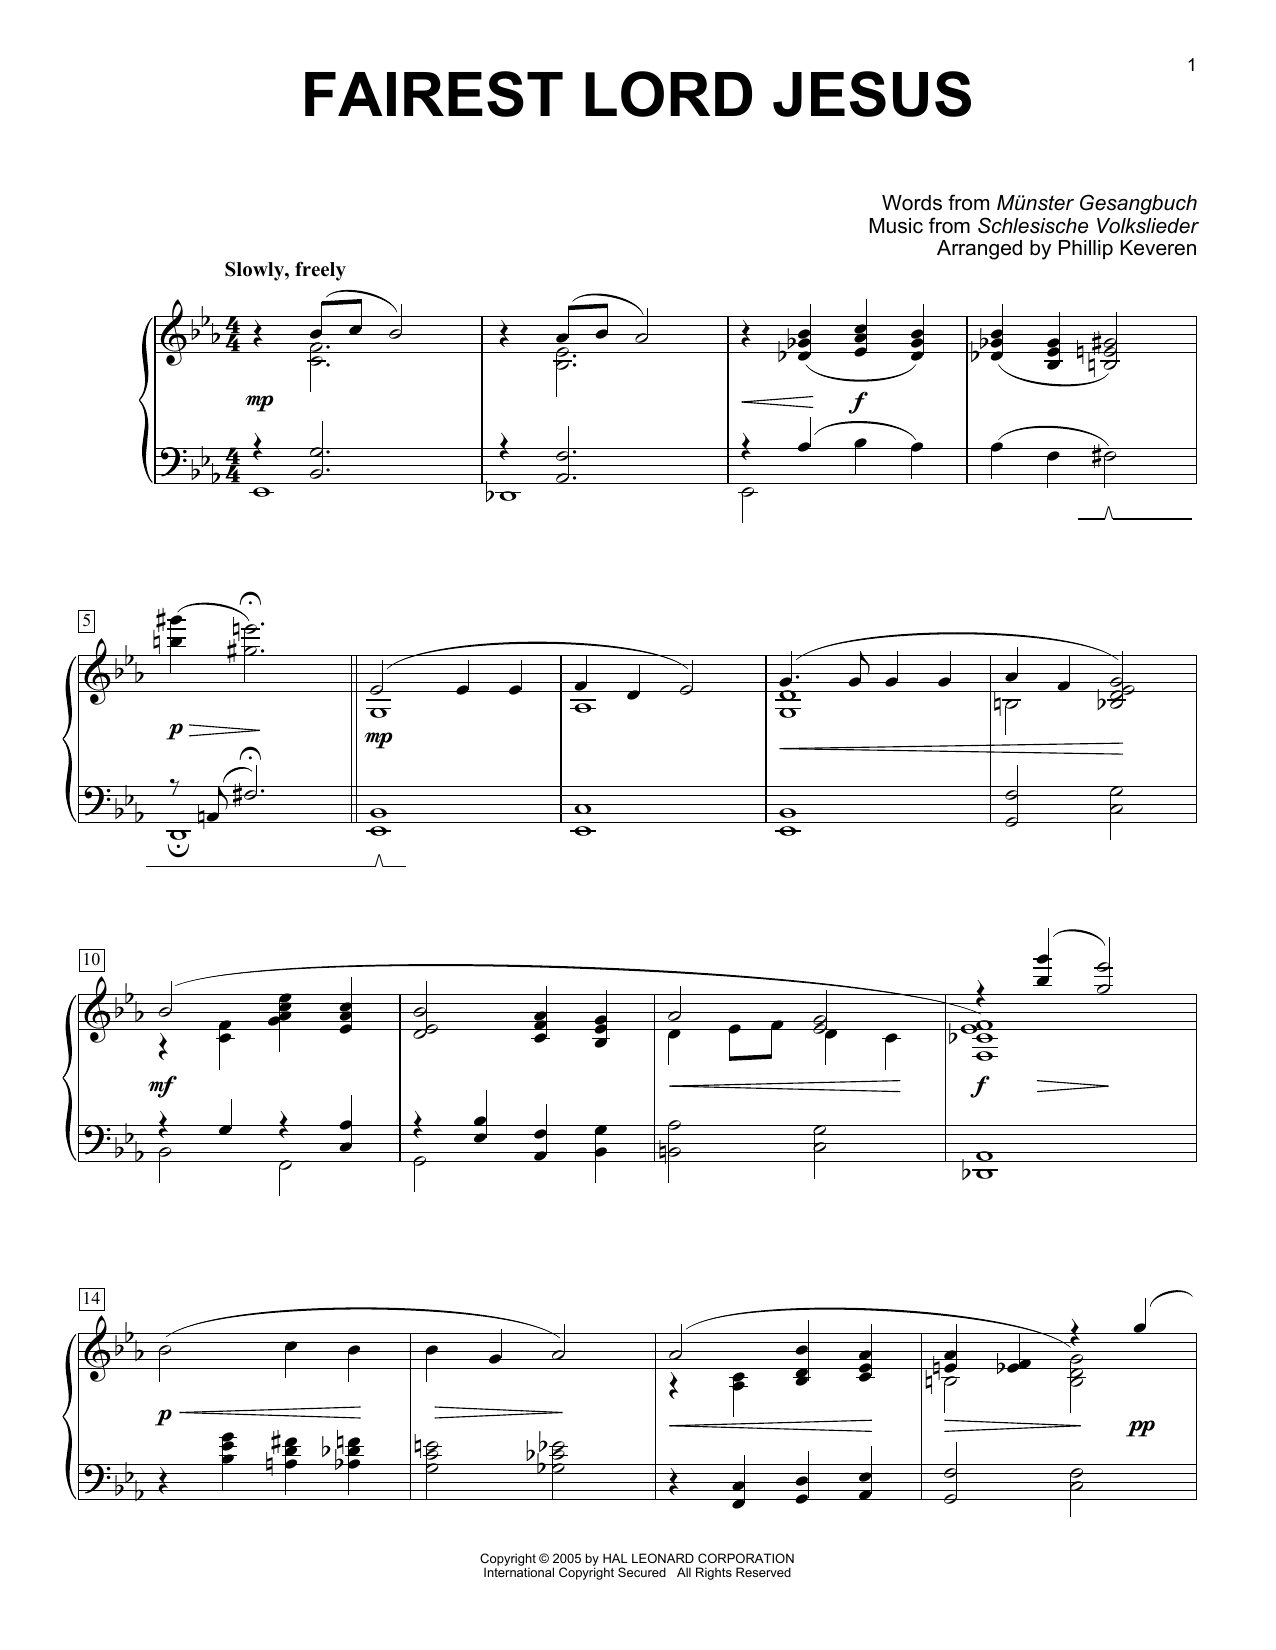 Download Munster Gesangbuch Fairest Lord Jesus [Jazz version] (arr. Sheet Music